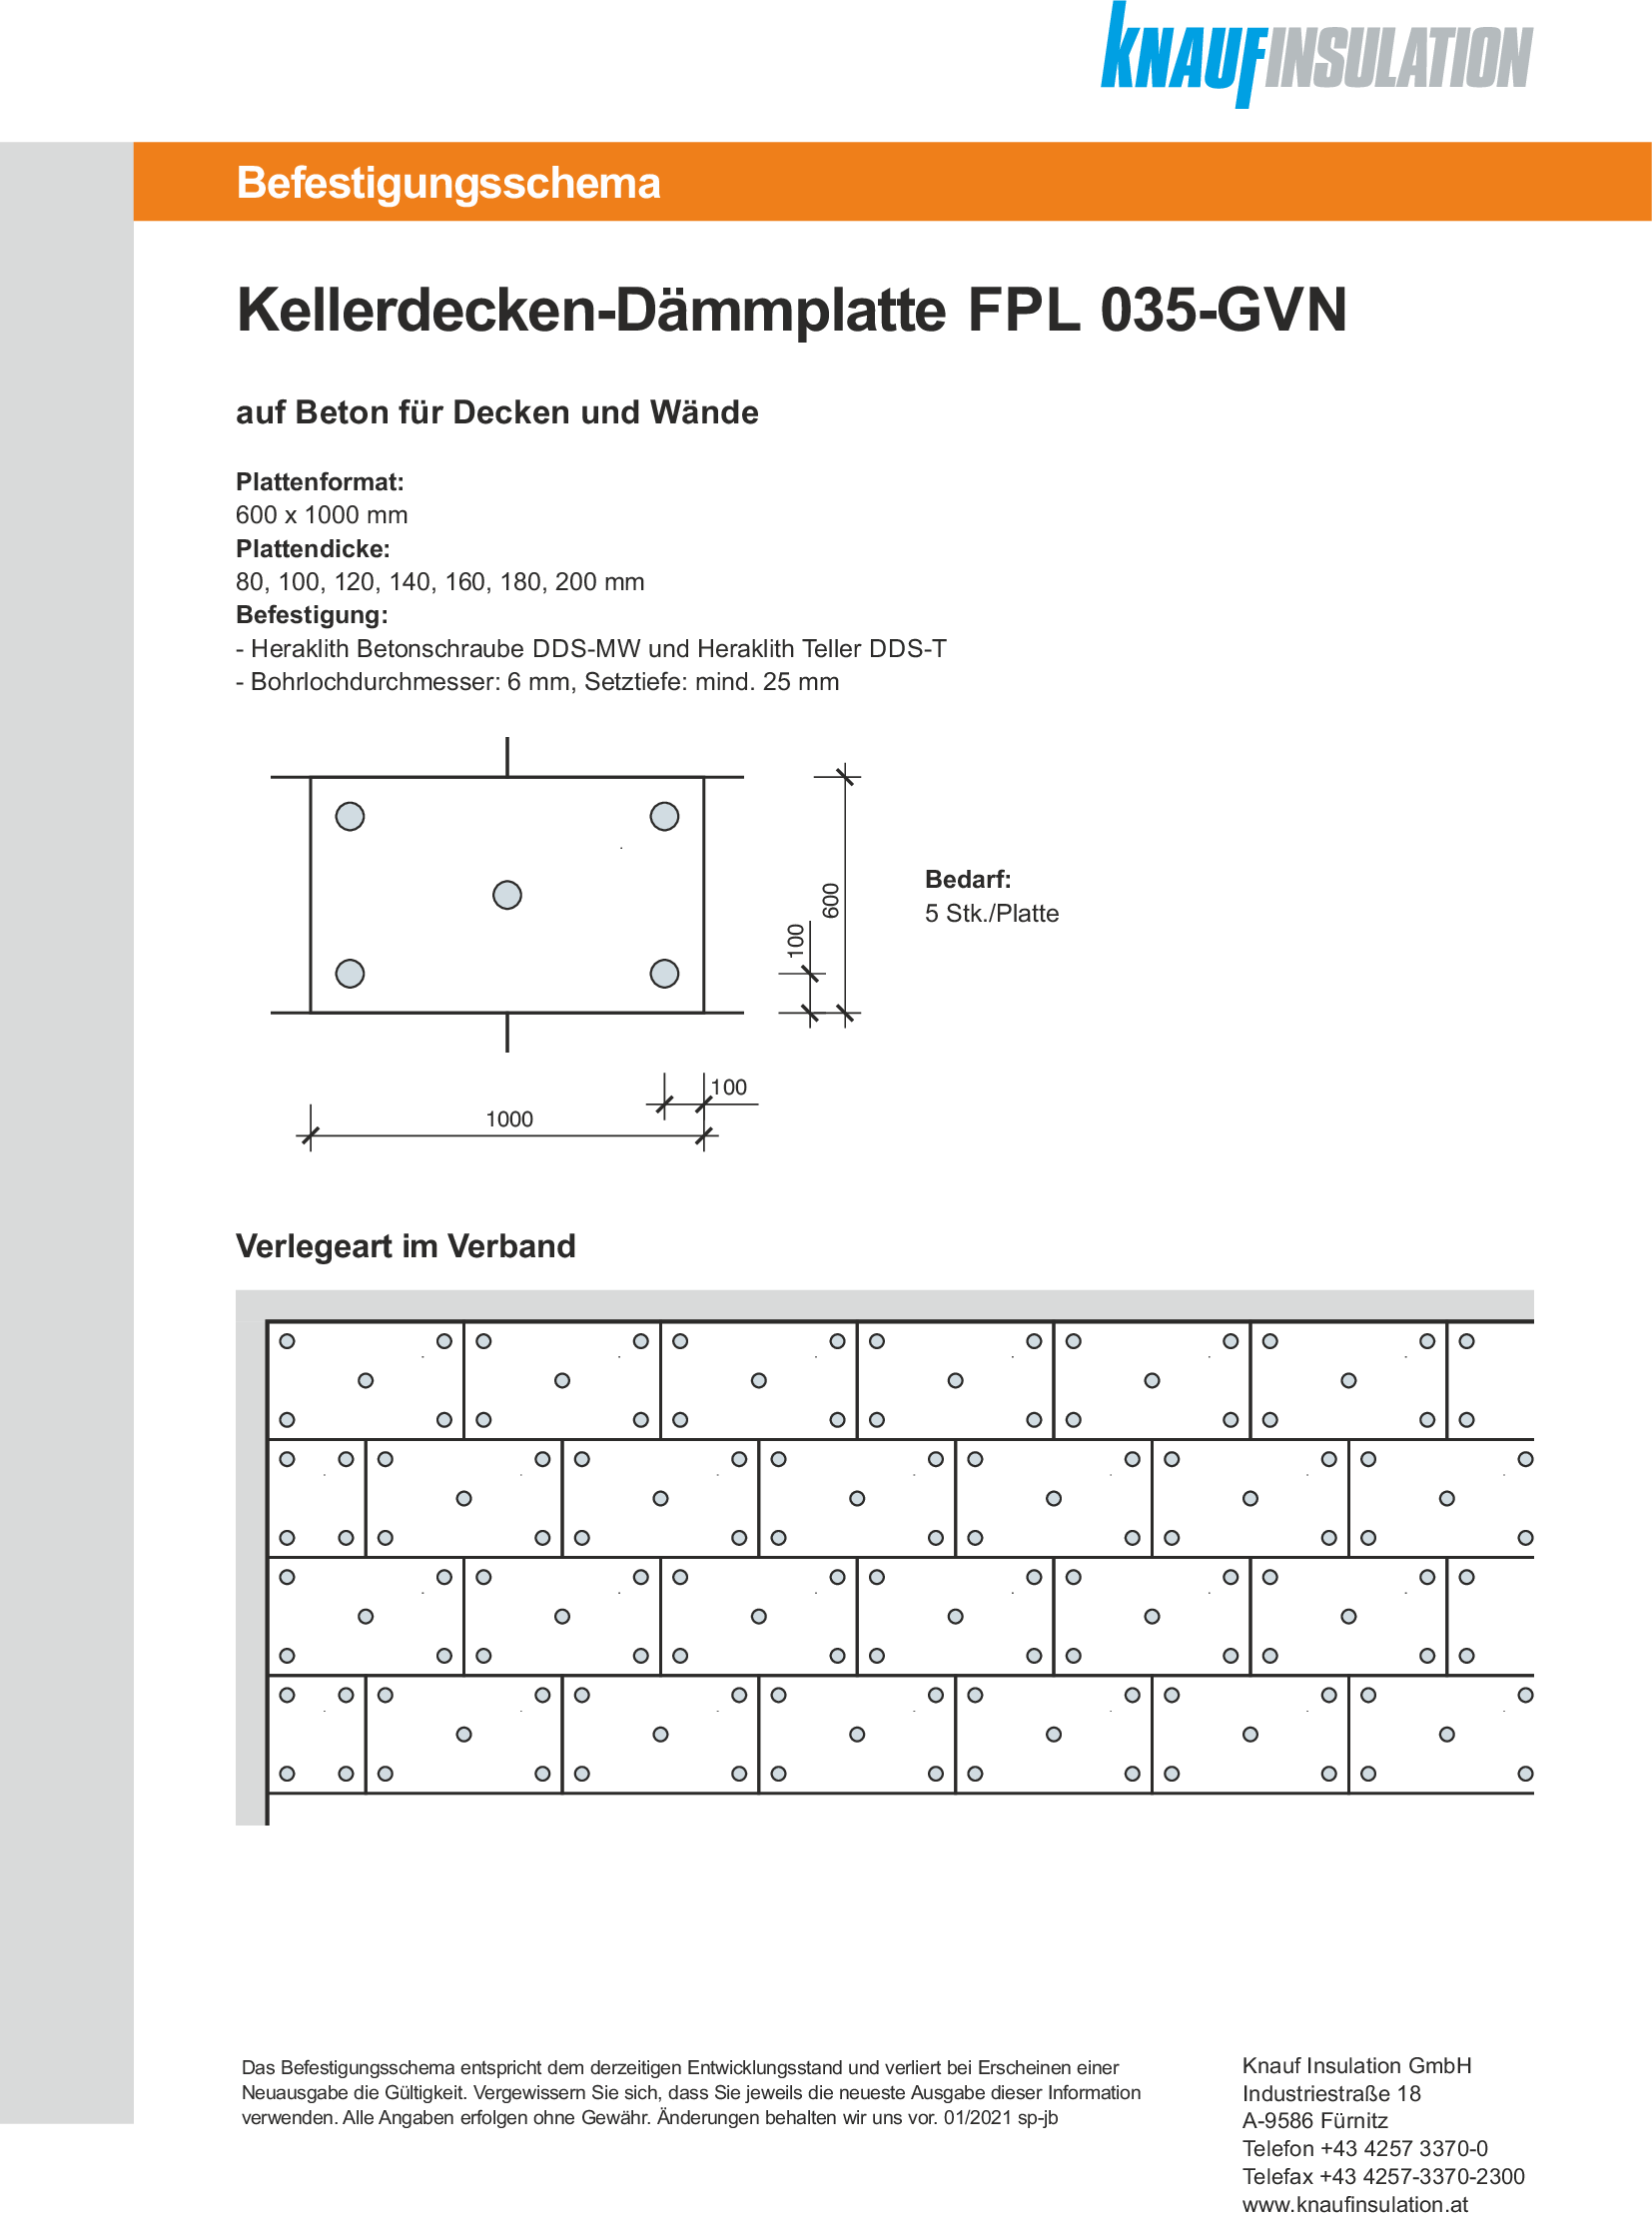 Kellerdecken-Dämmplatte FPL 035-GVN, Befestigungsschema